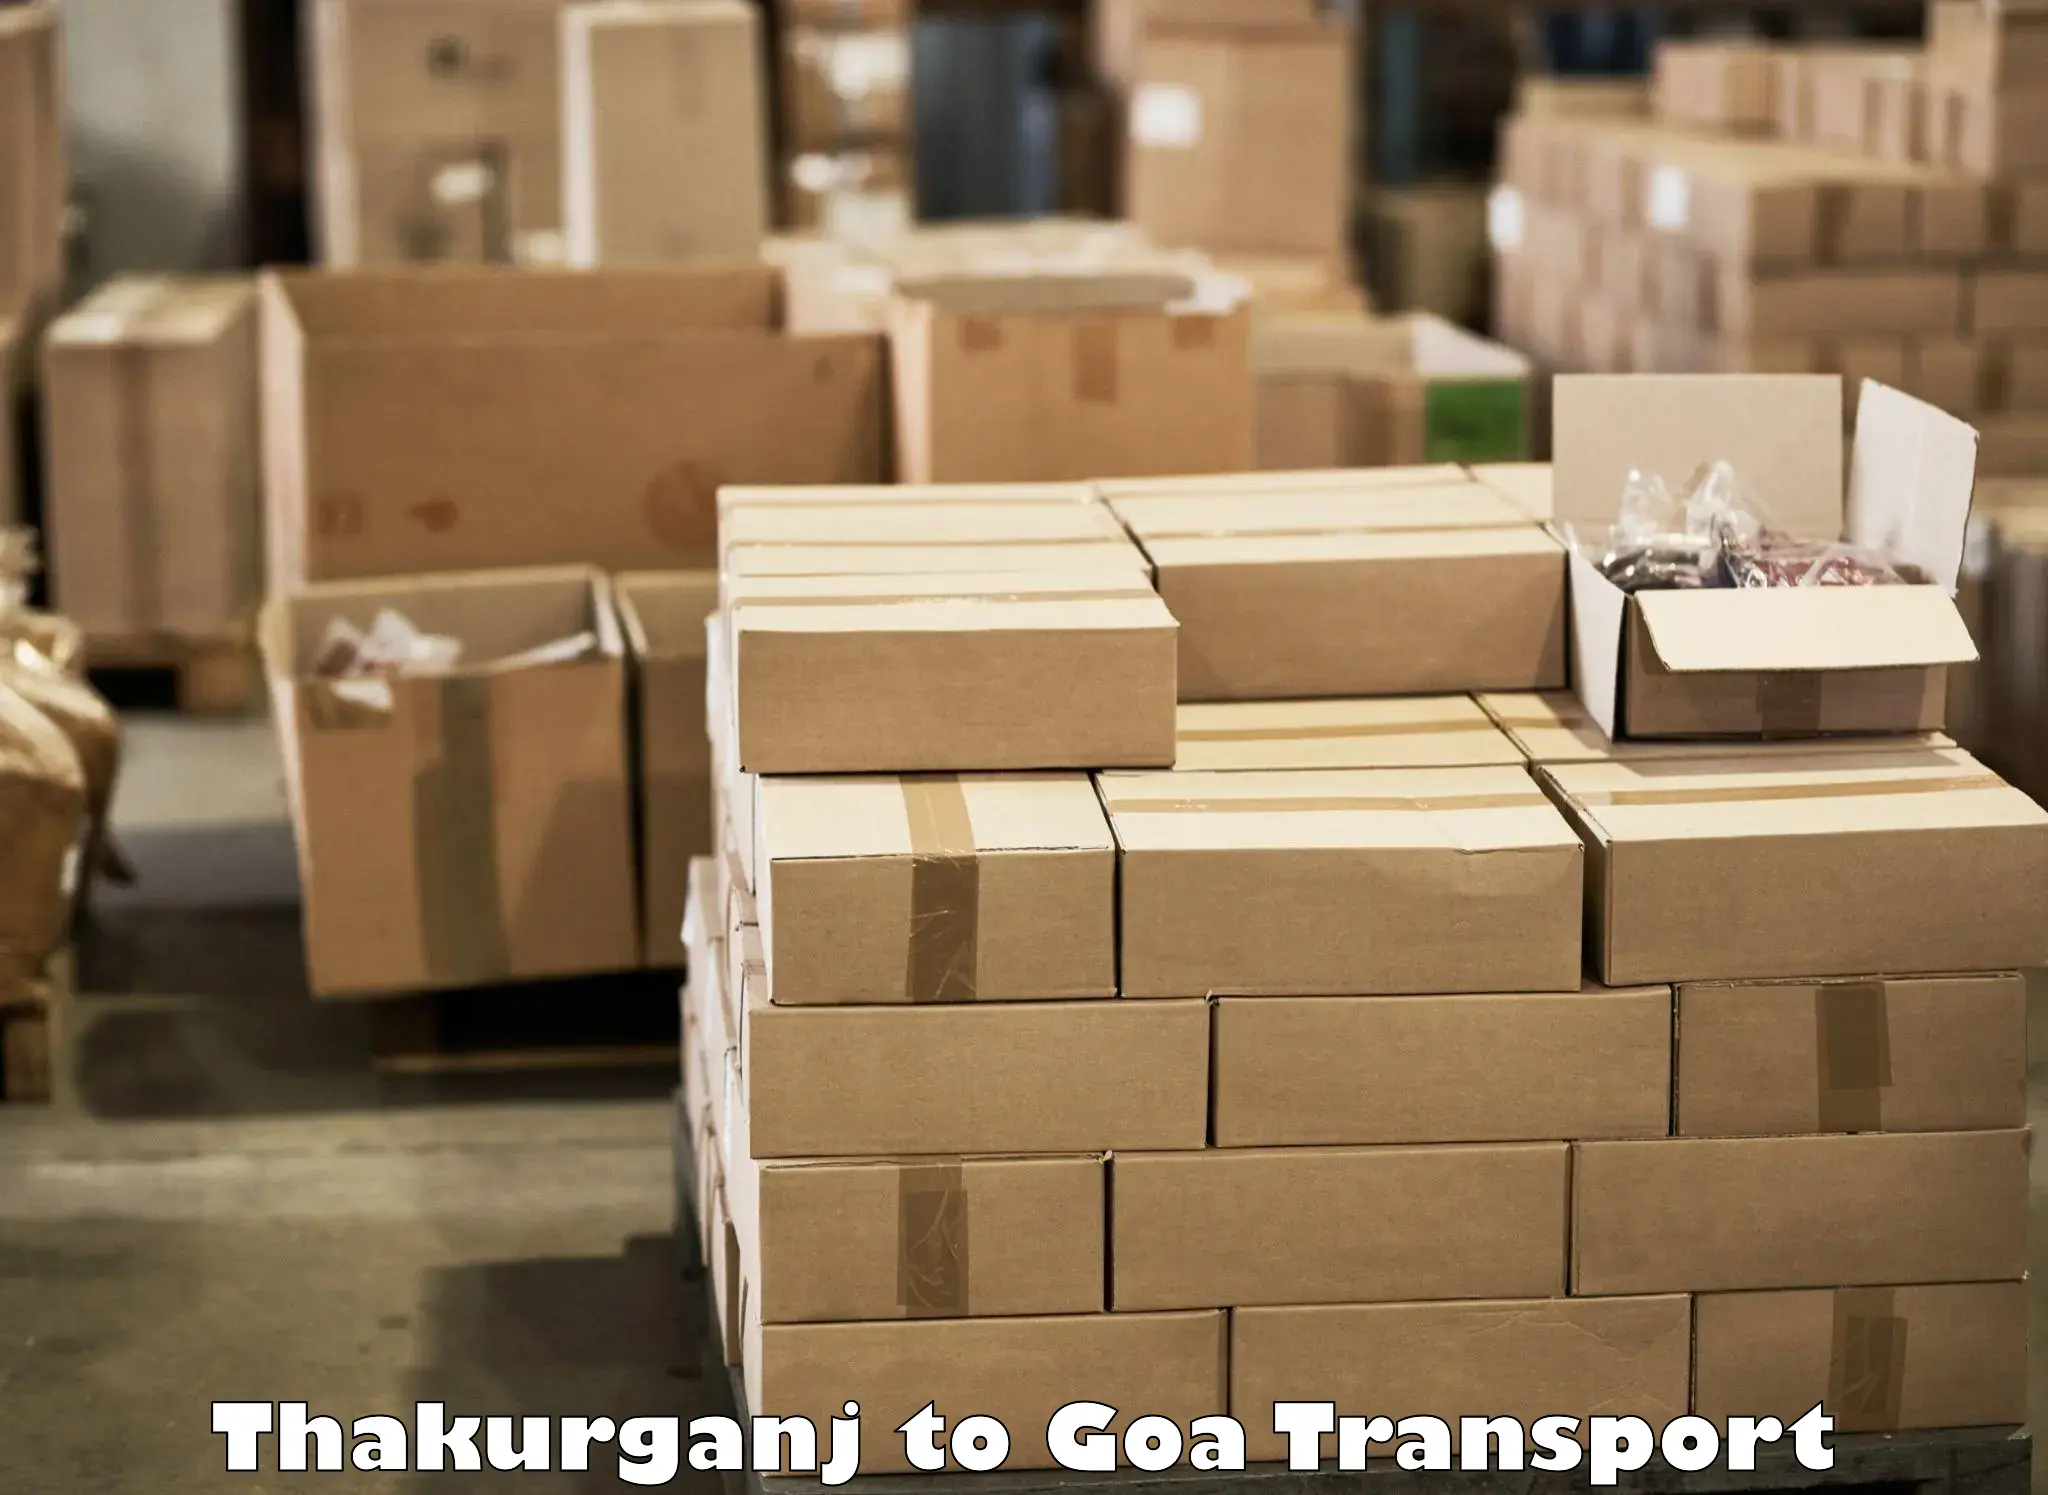 Transport services Thakurganj to IIT Goa